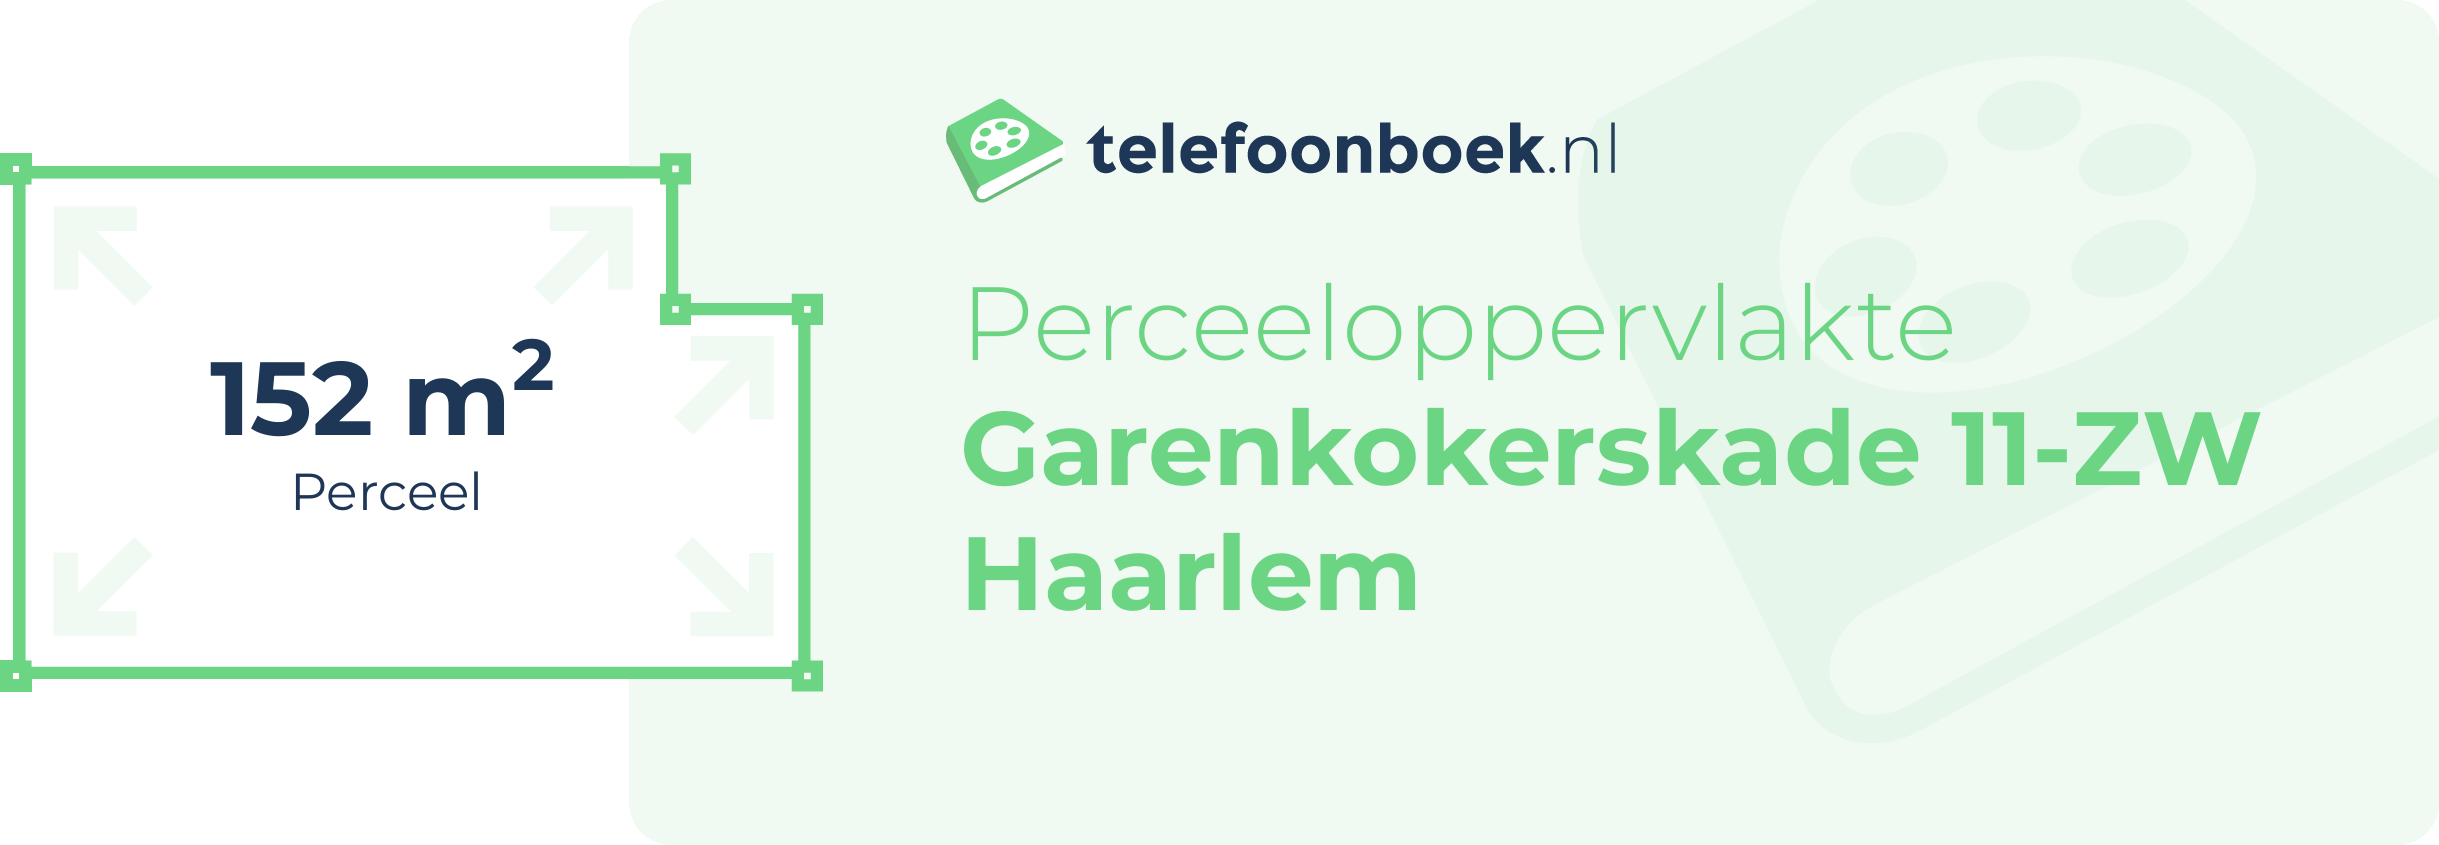 Perceeloppervlakte Garenkokerskade 11-ZW Haarlem